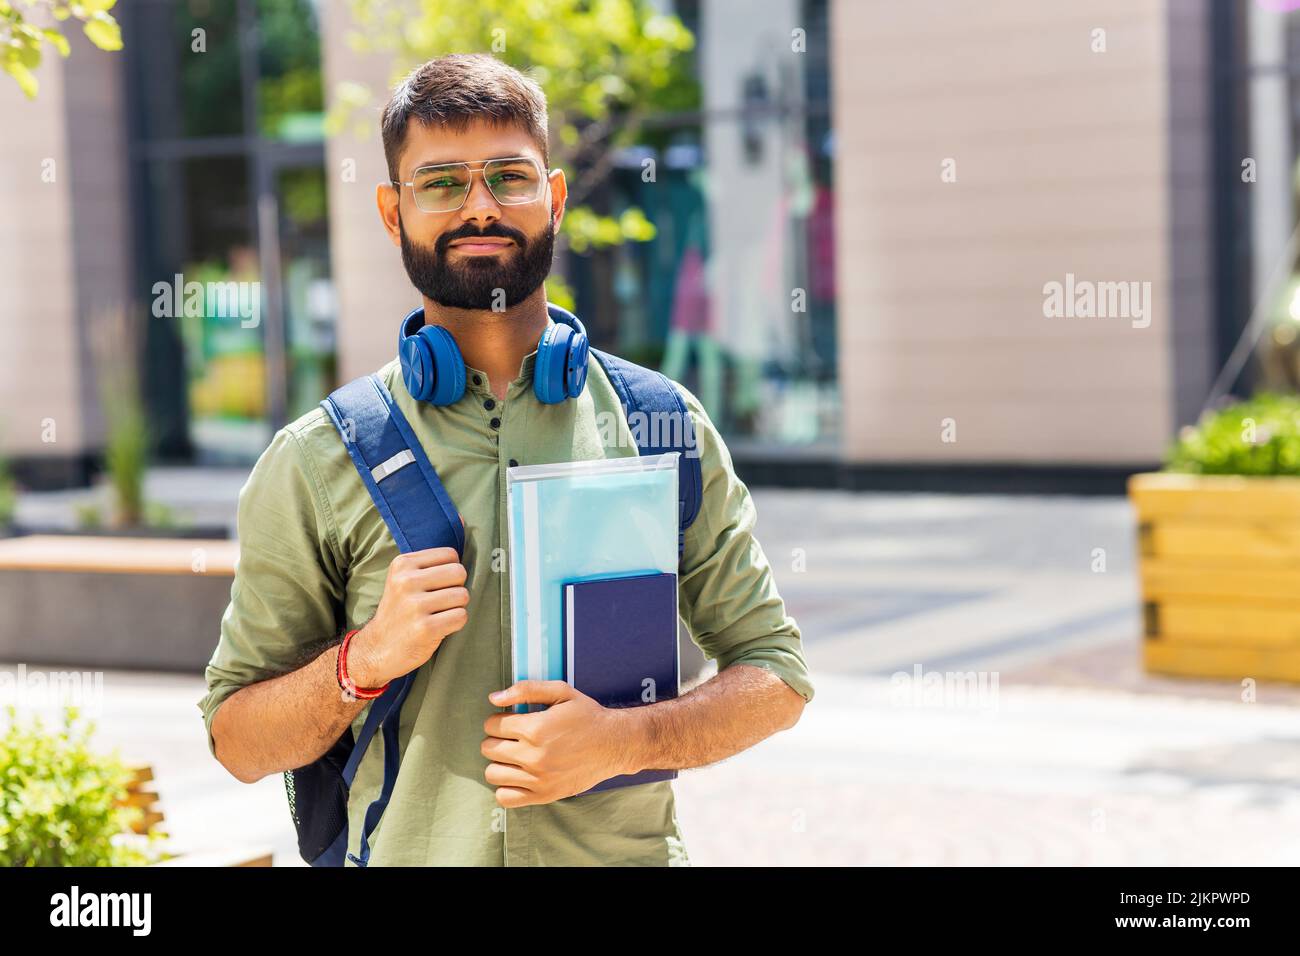 indischer Student mit blauem Headset und Rucksack, der an sonnigen Tagen Bücher hält Stockfoto